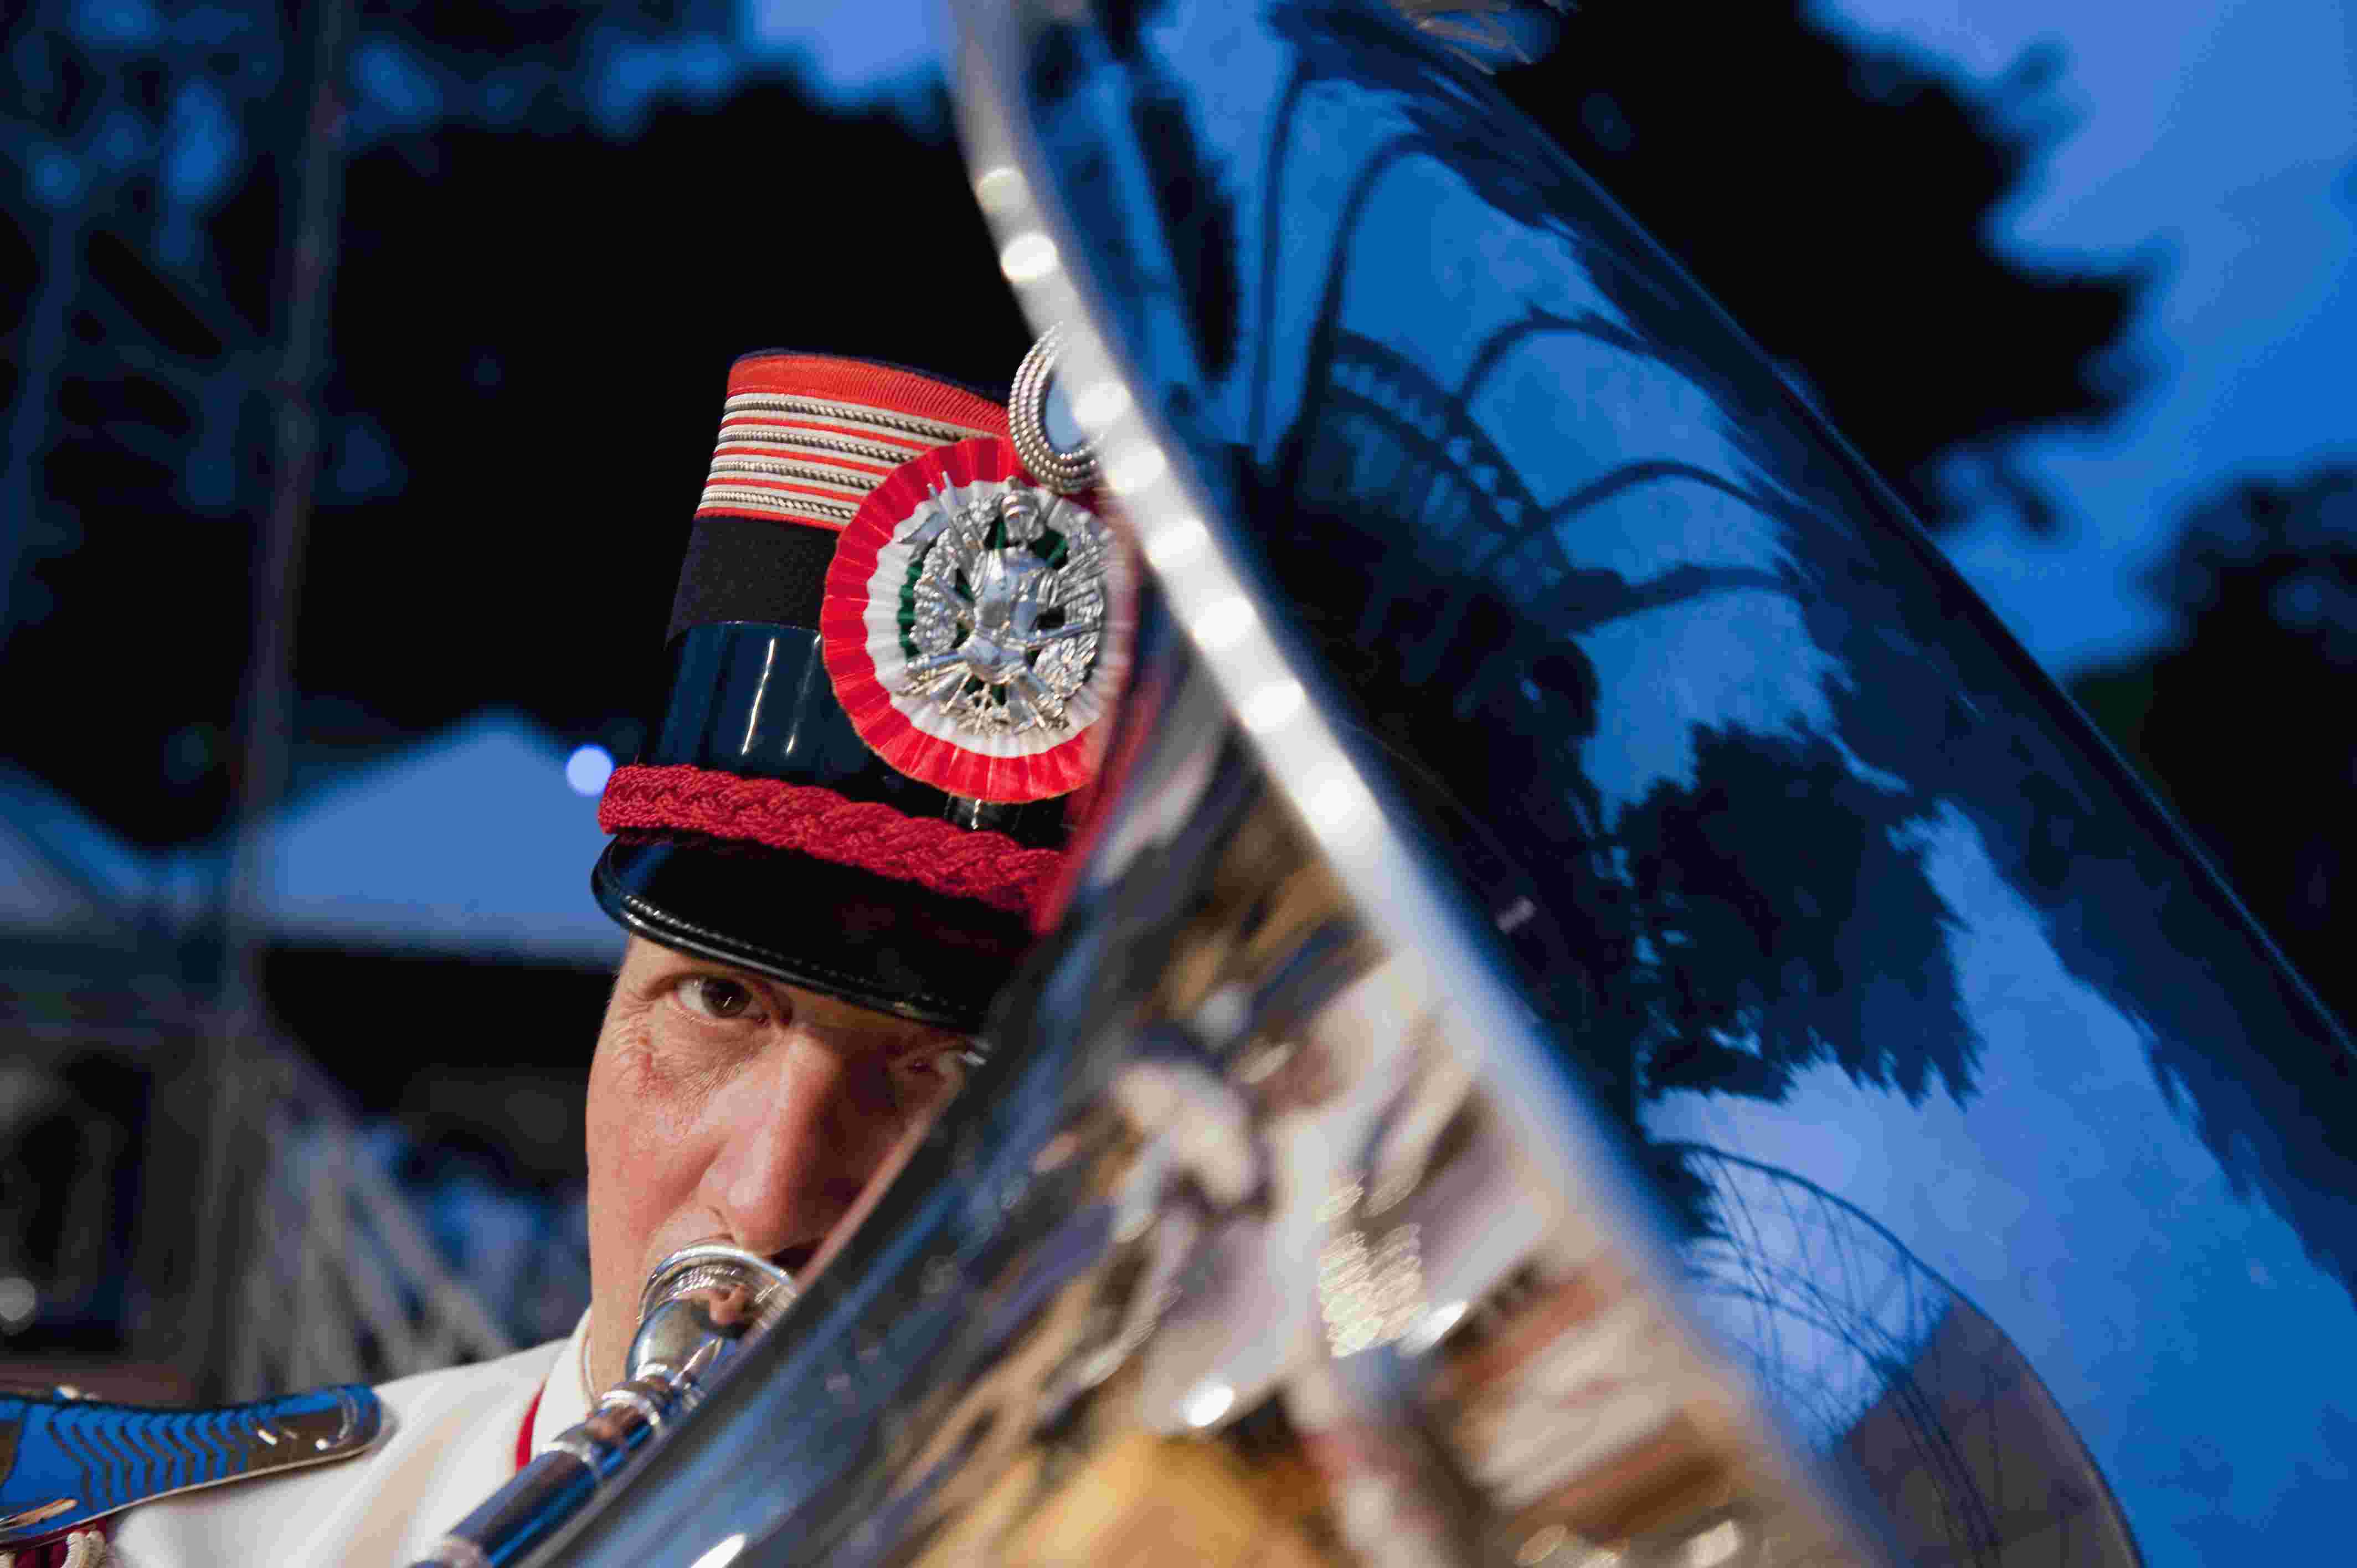 Concerto della banda militare dell’esercito italiano                                                                                        al festival “Hector Berlioz” -  LA CÔTE SAINT ANDRÈ (francia)